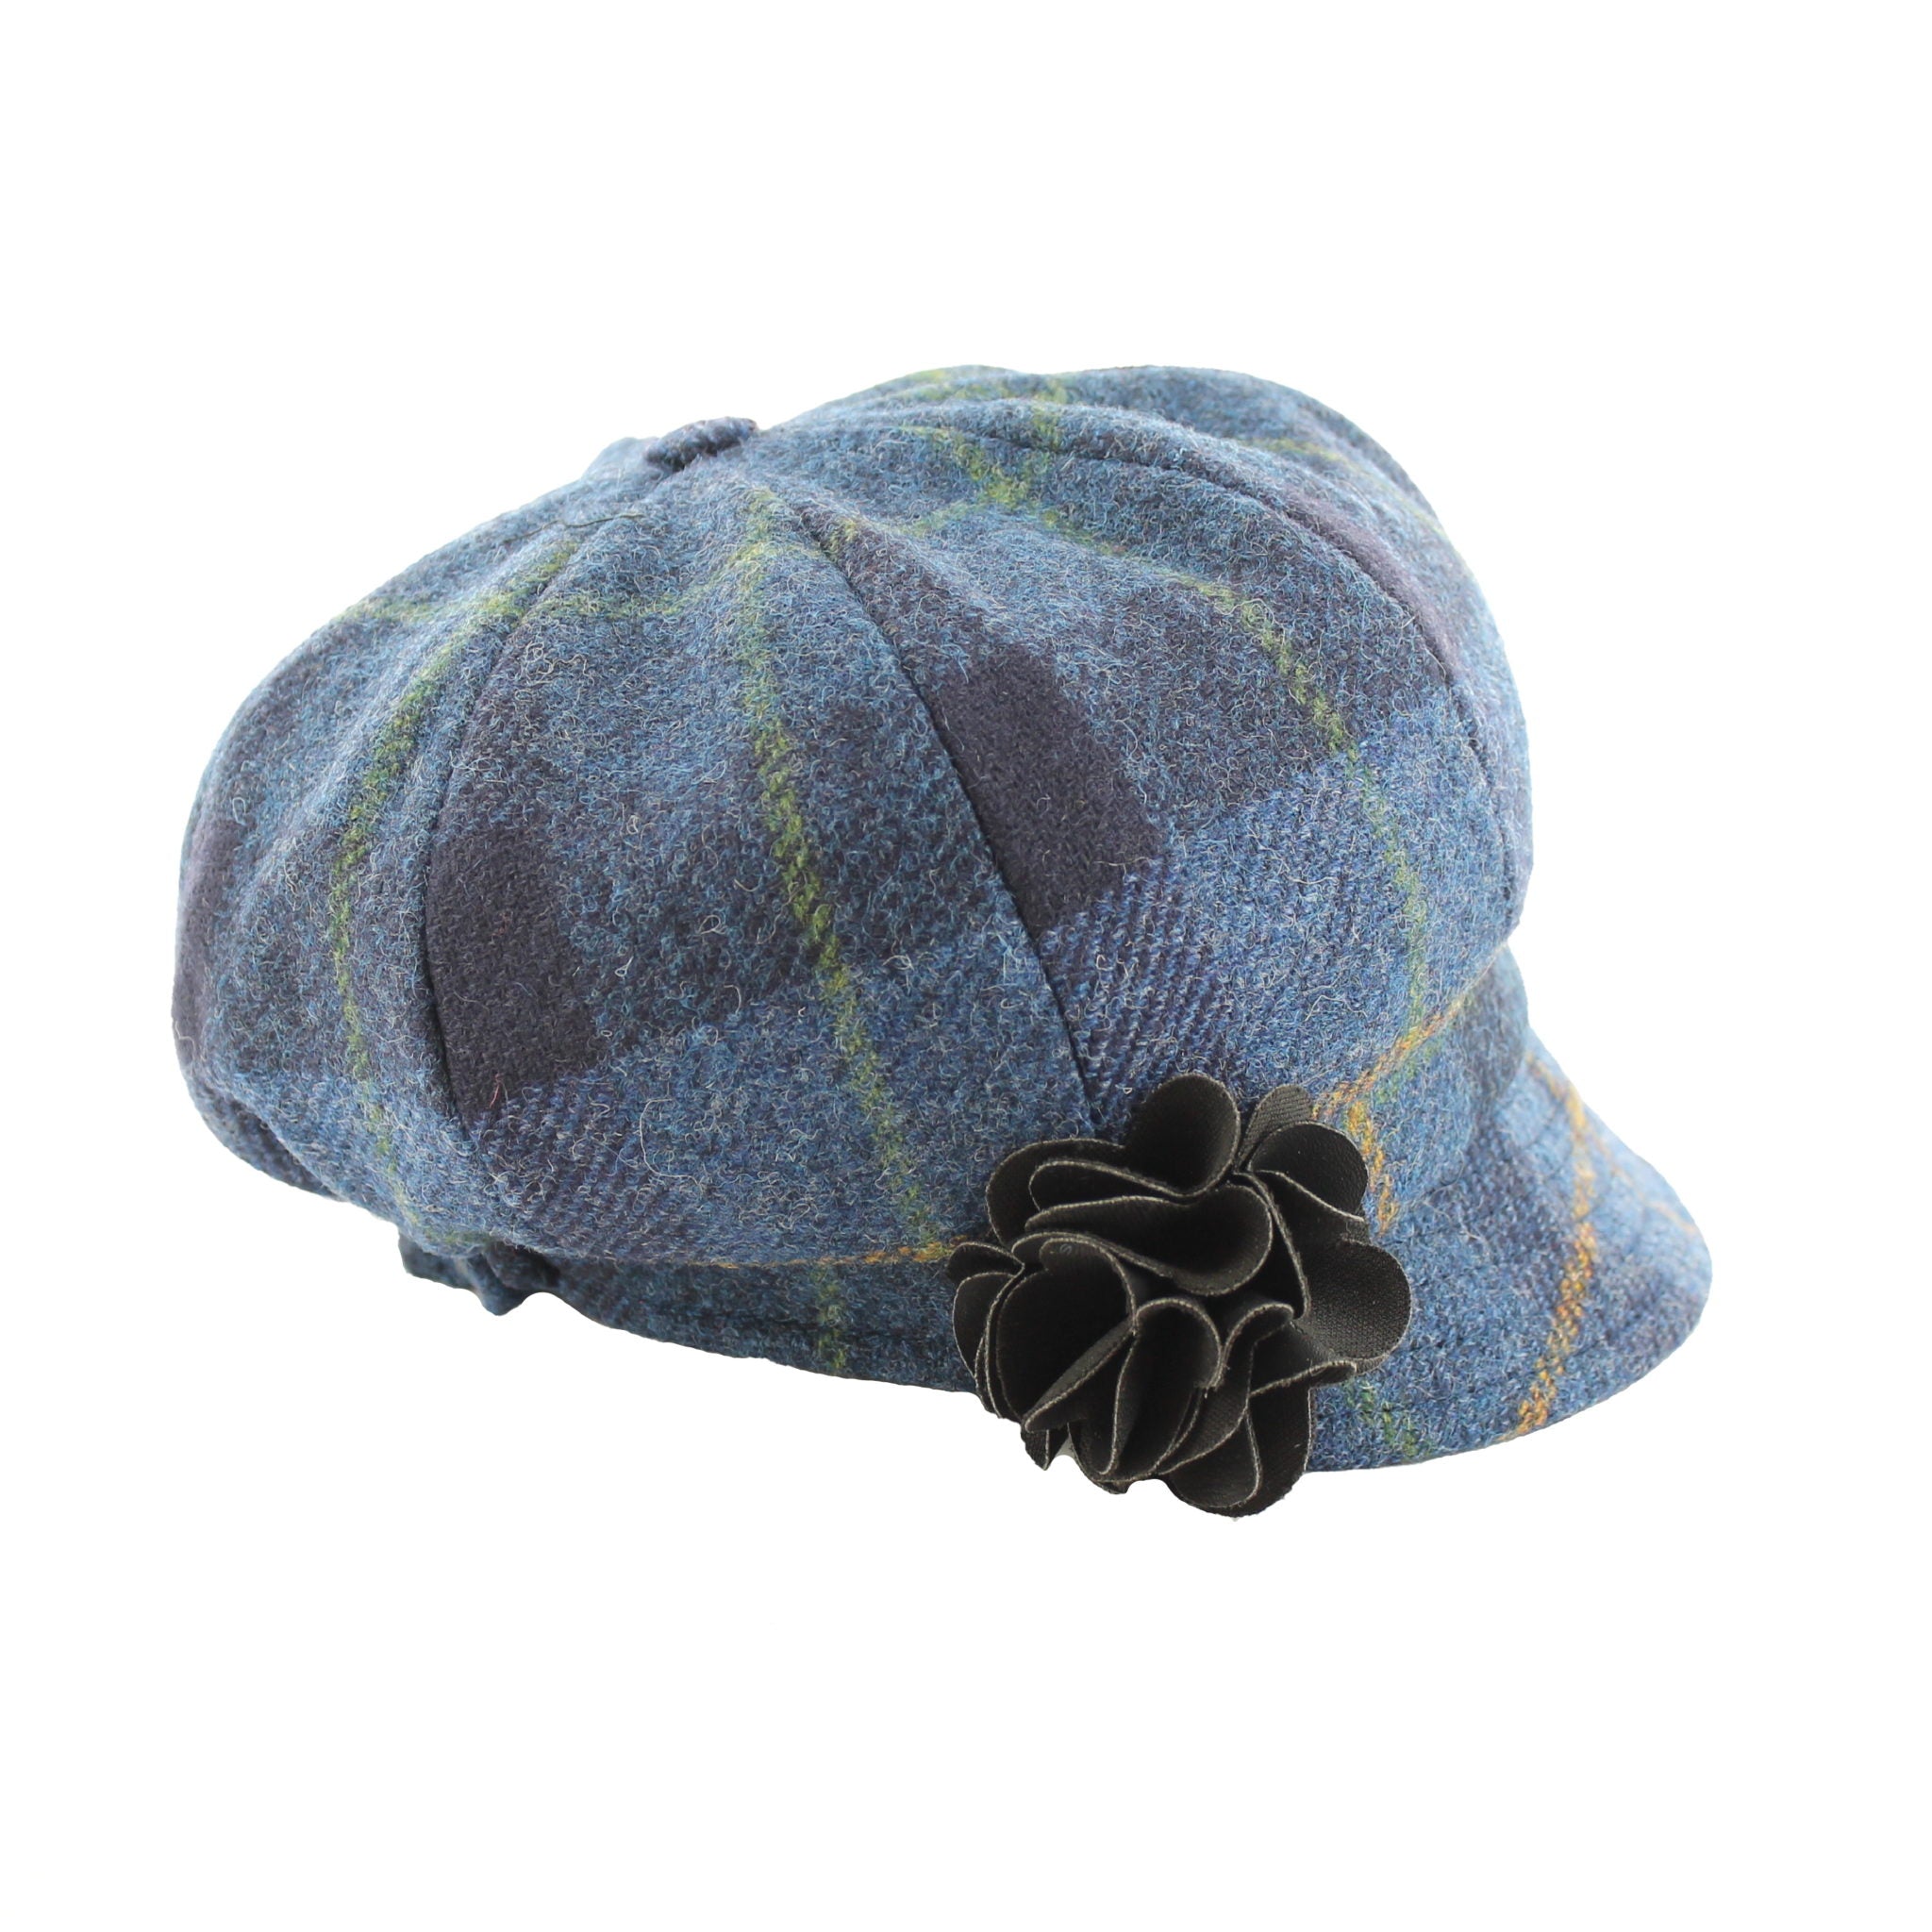 Mucros Weavers Women's Tweed Newsboy Hat